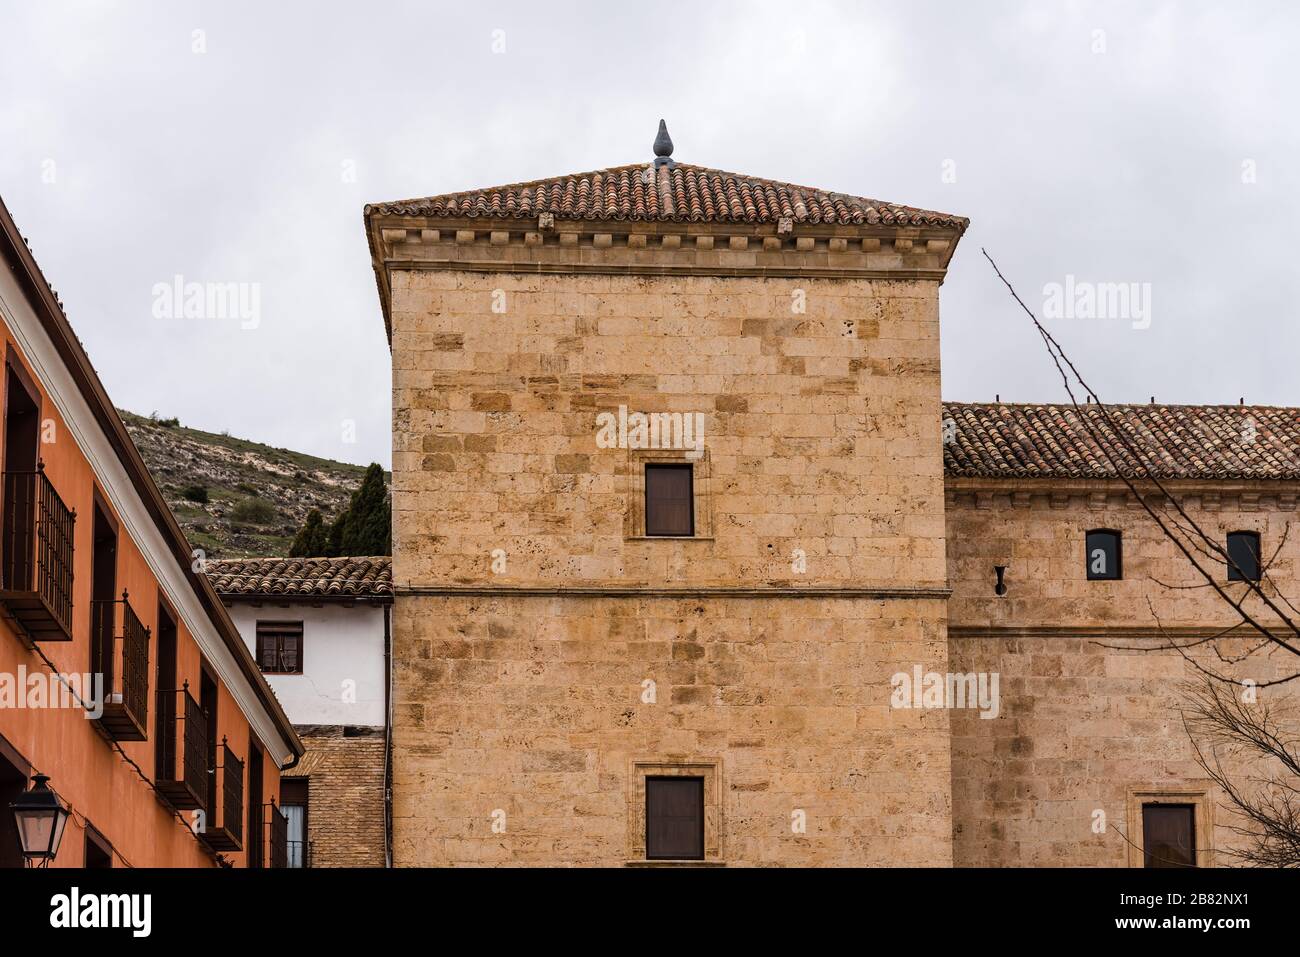 Vista de la ciudad medieval de Pastrana con tejados de tejas y casas  tradicionales. La Alcarria, Guadalajara, España Fotografía de stock - Alamy